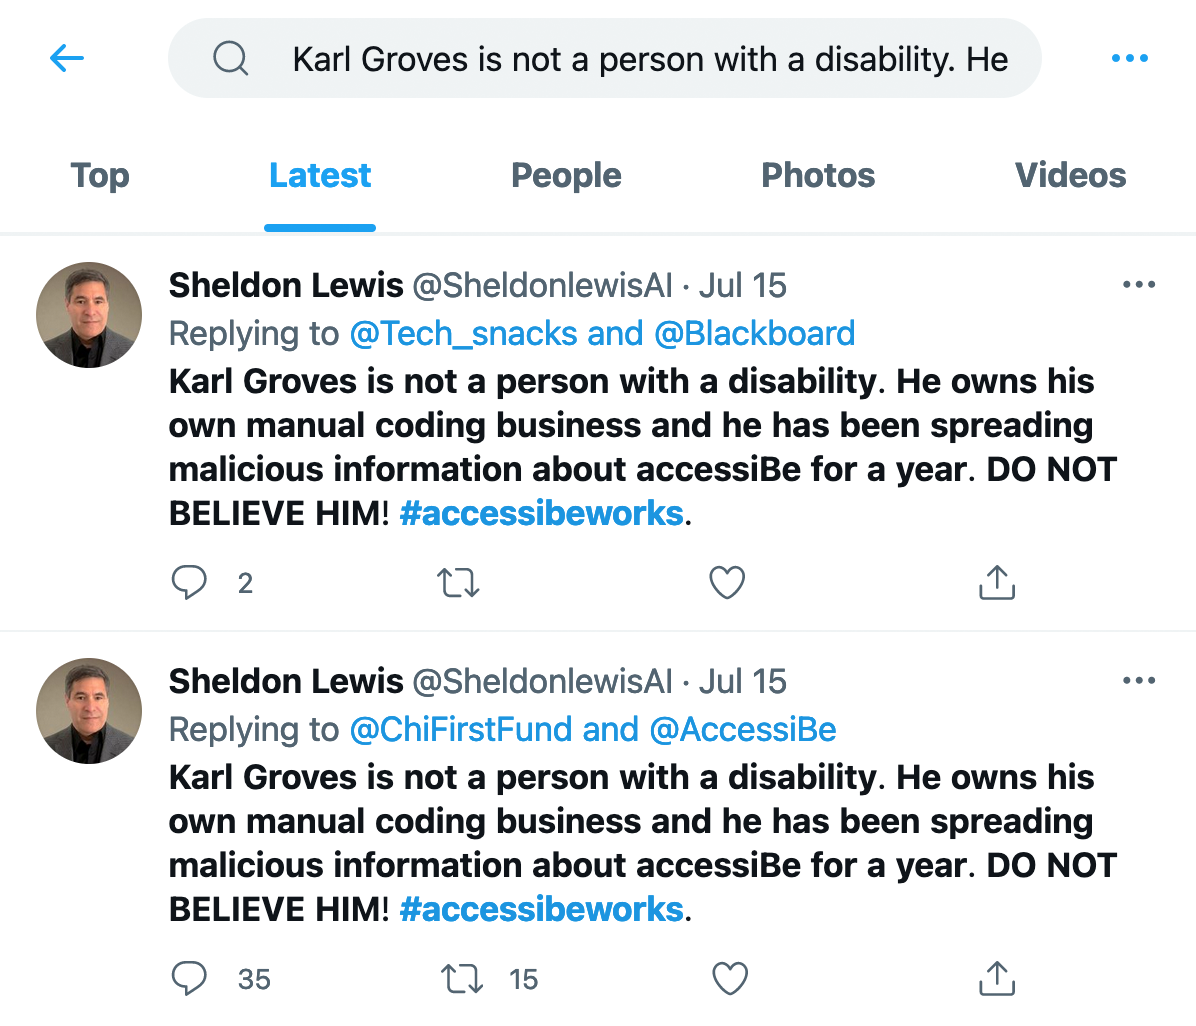 スクリーンショット: Twitter で「KarlGroves は障害者ではありません。彼はマニュアルコーディングビジネスを所持しており、accessiBe に関する悪意のある情報を1年間広めています。彼を信じないでください！ #accessibeworks」2つの検索結果があり、どちらも SheldonLewis というアカウントによるものです。